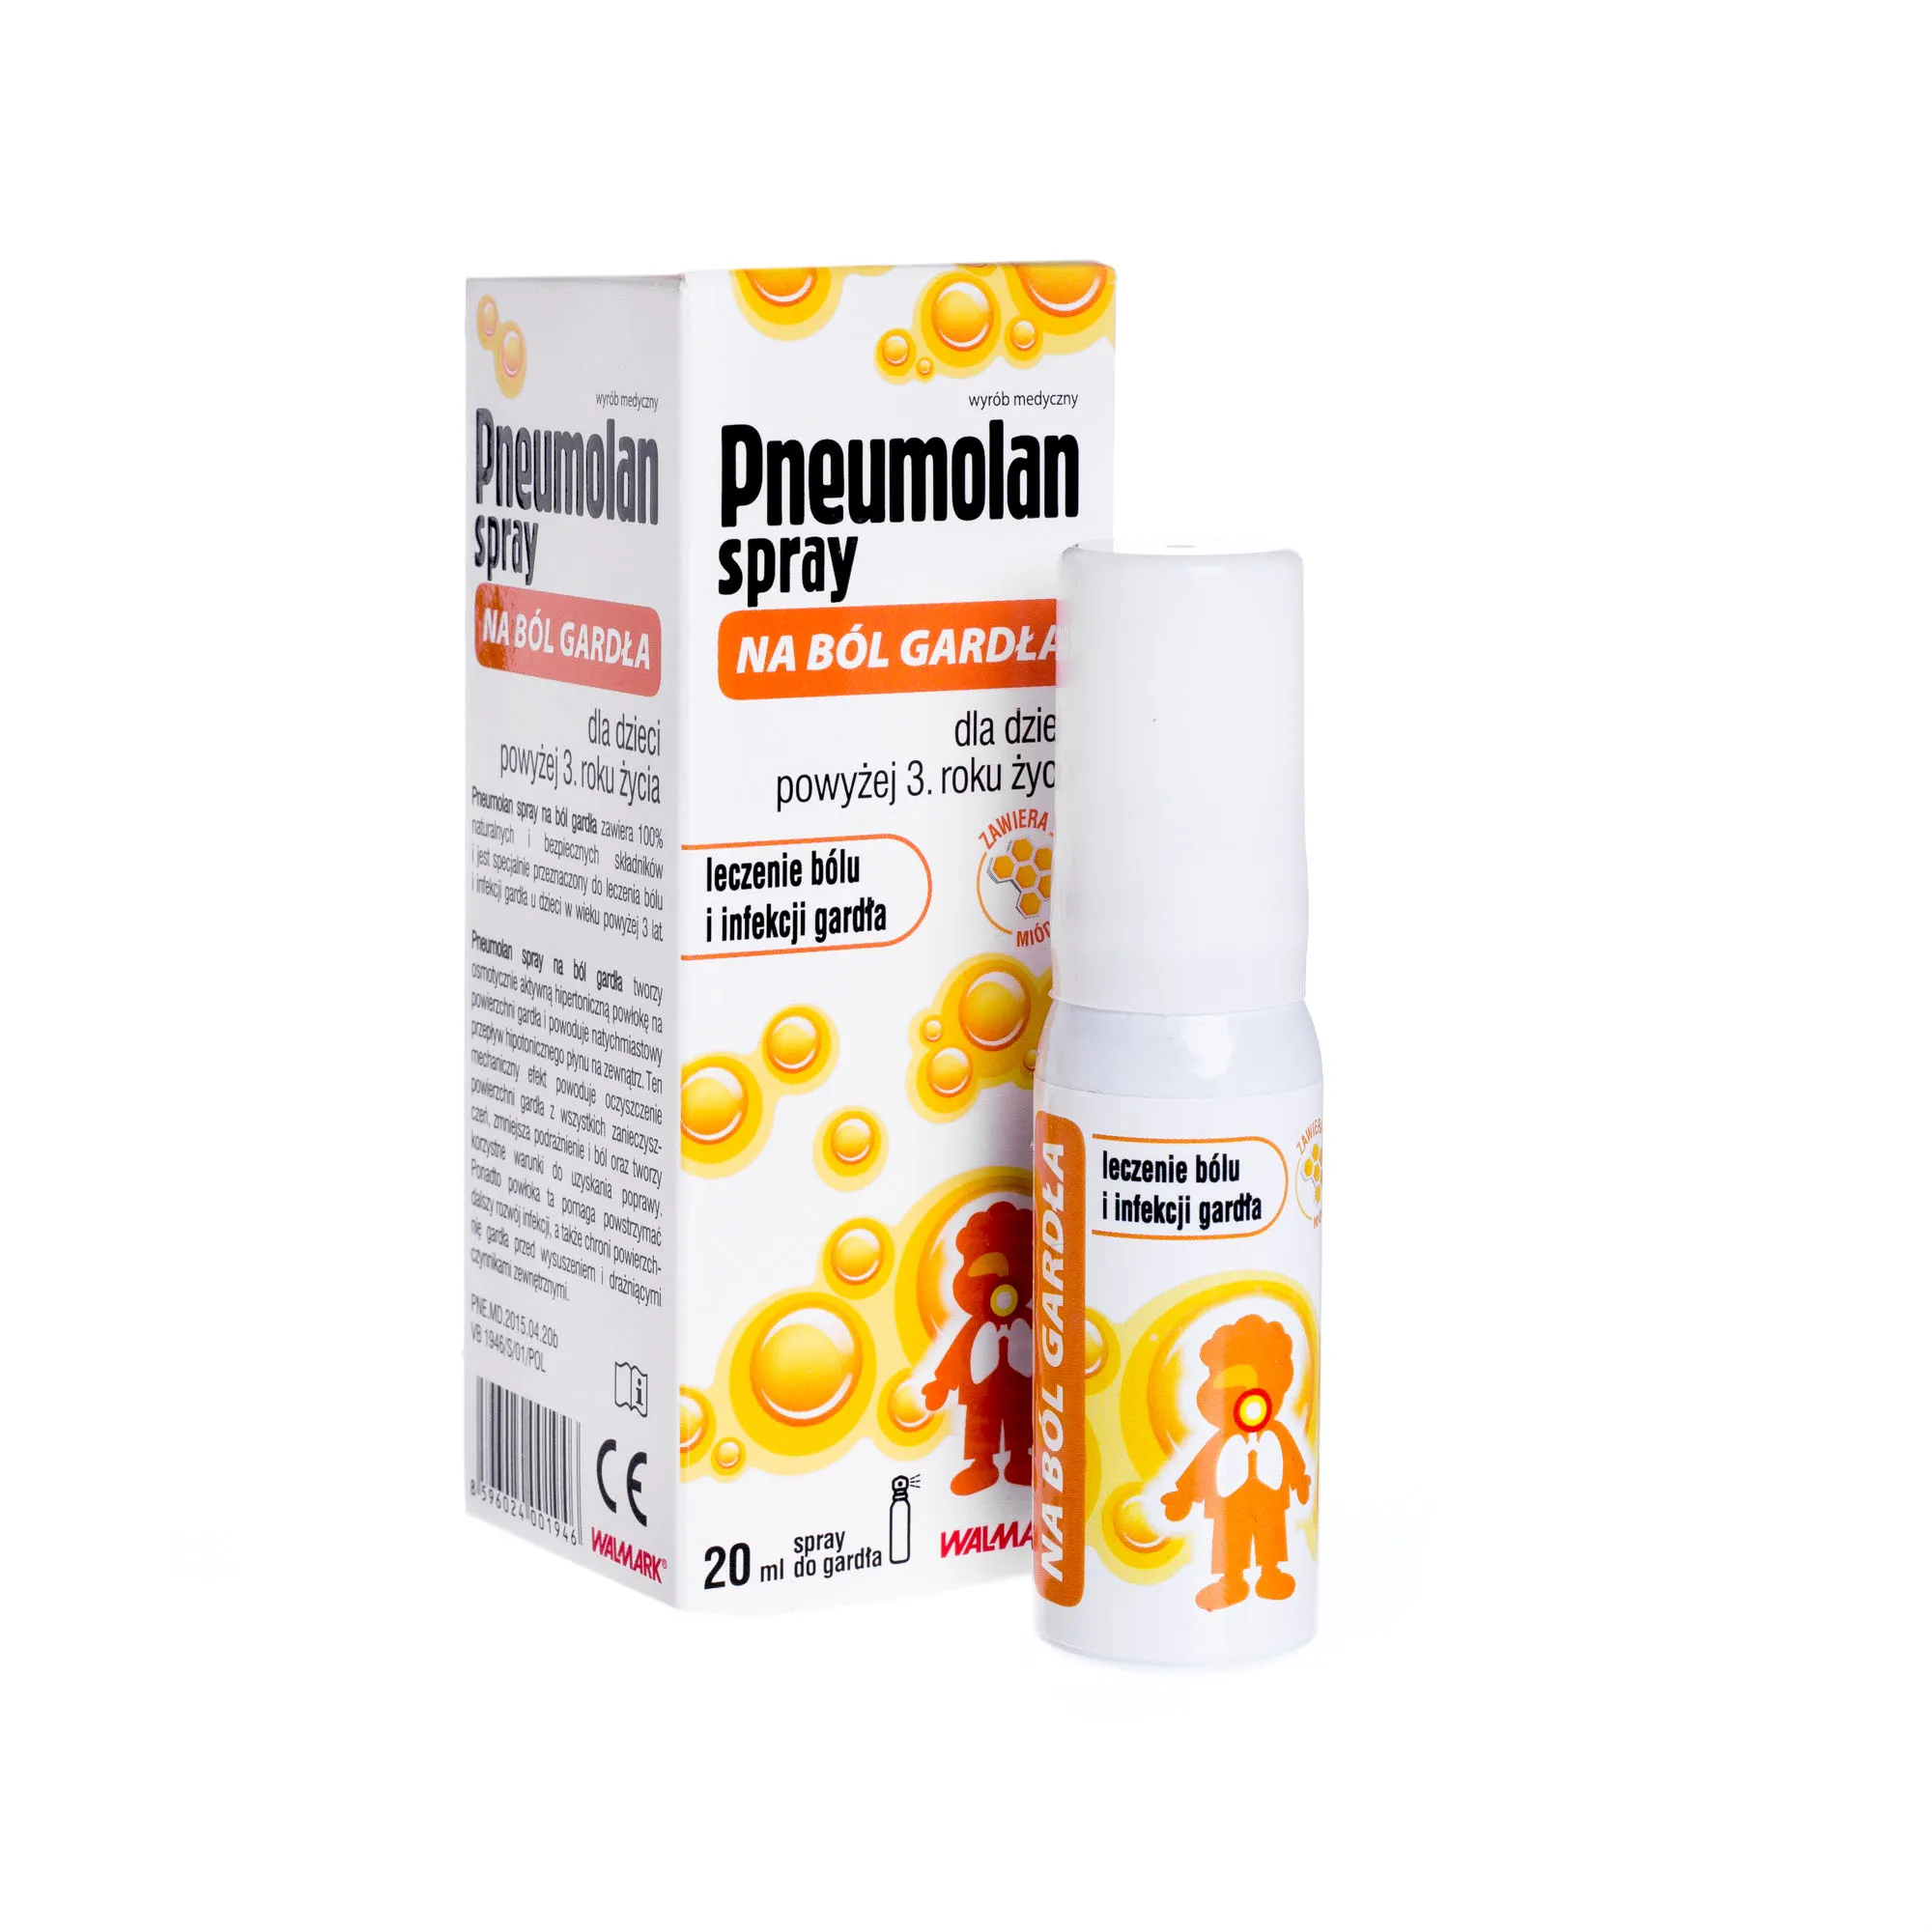 Pneumolan Spray na ból gardła, dla dzieci powyżej 3 roku życia, 20 ml 